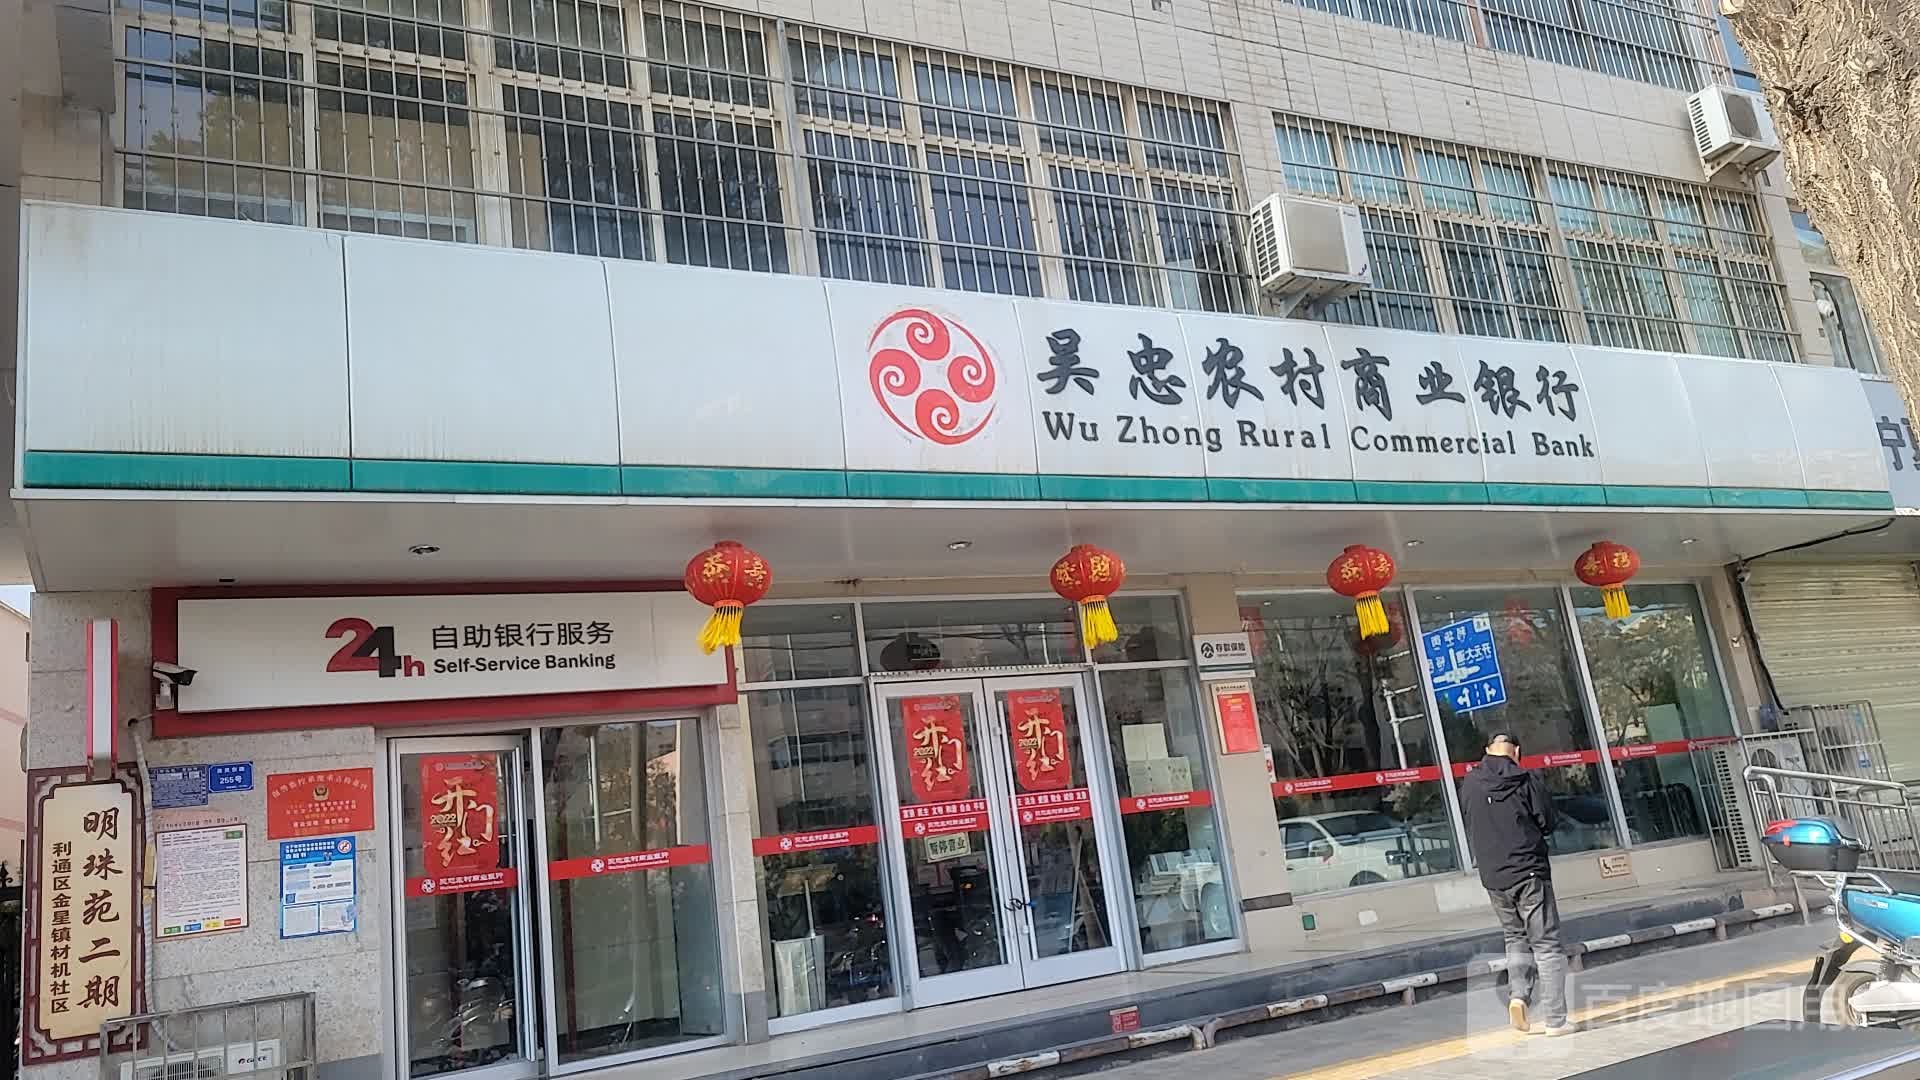 吴忠农村商业银行24小时自助银行((古城支行)